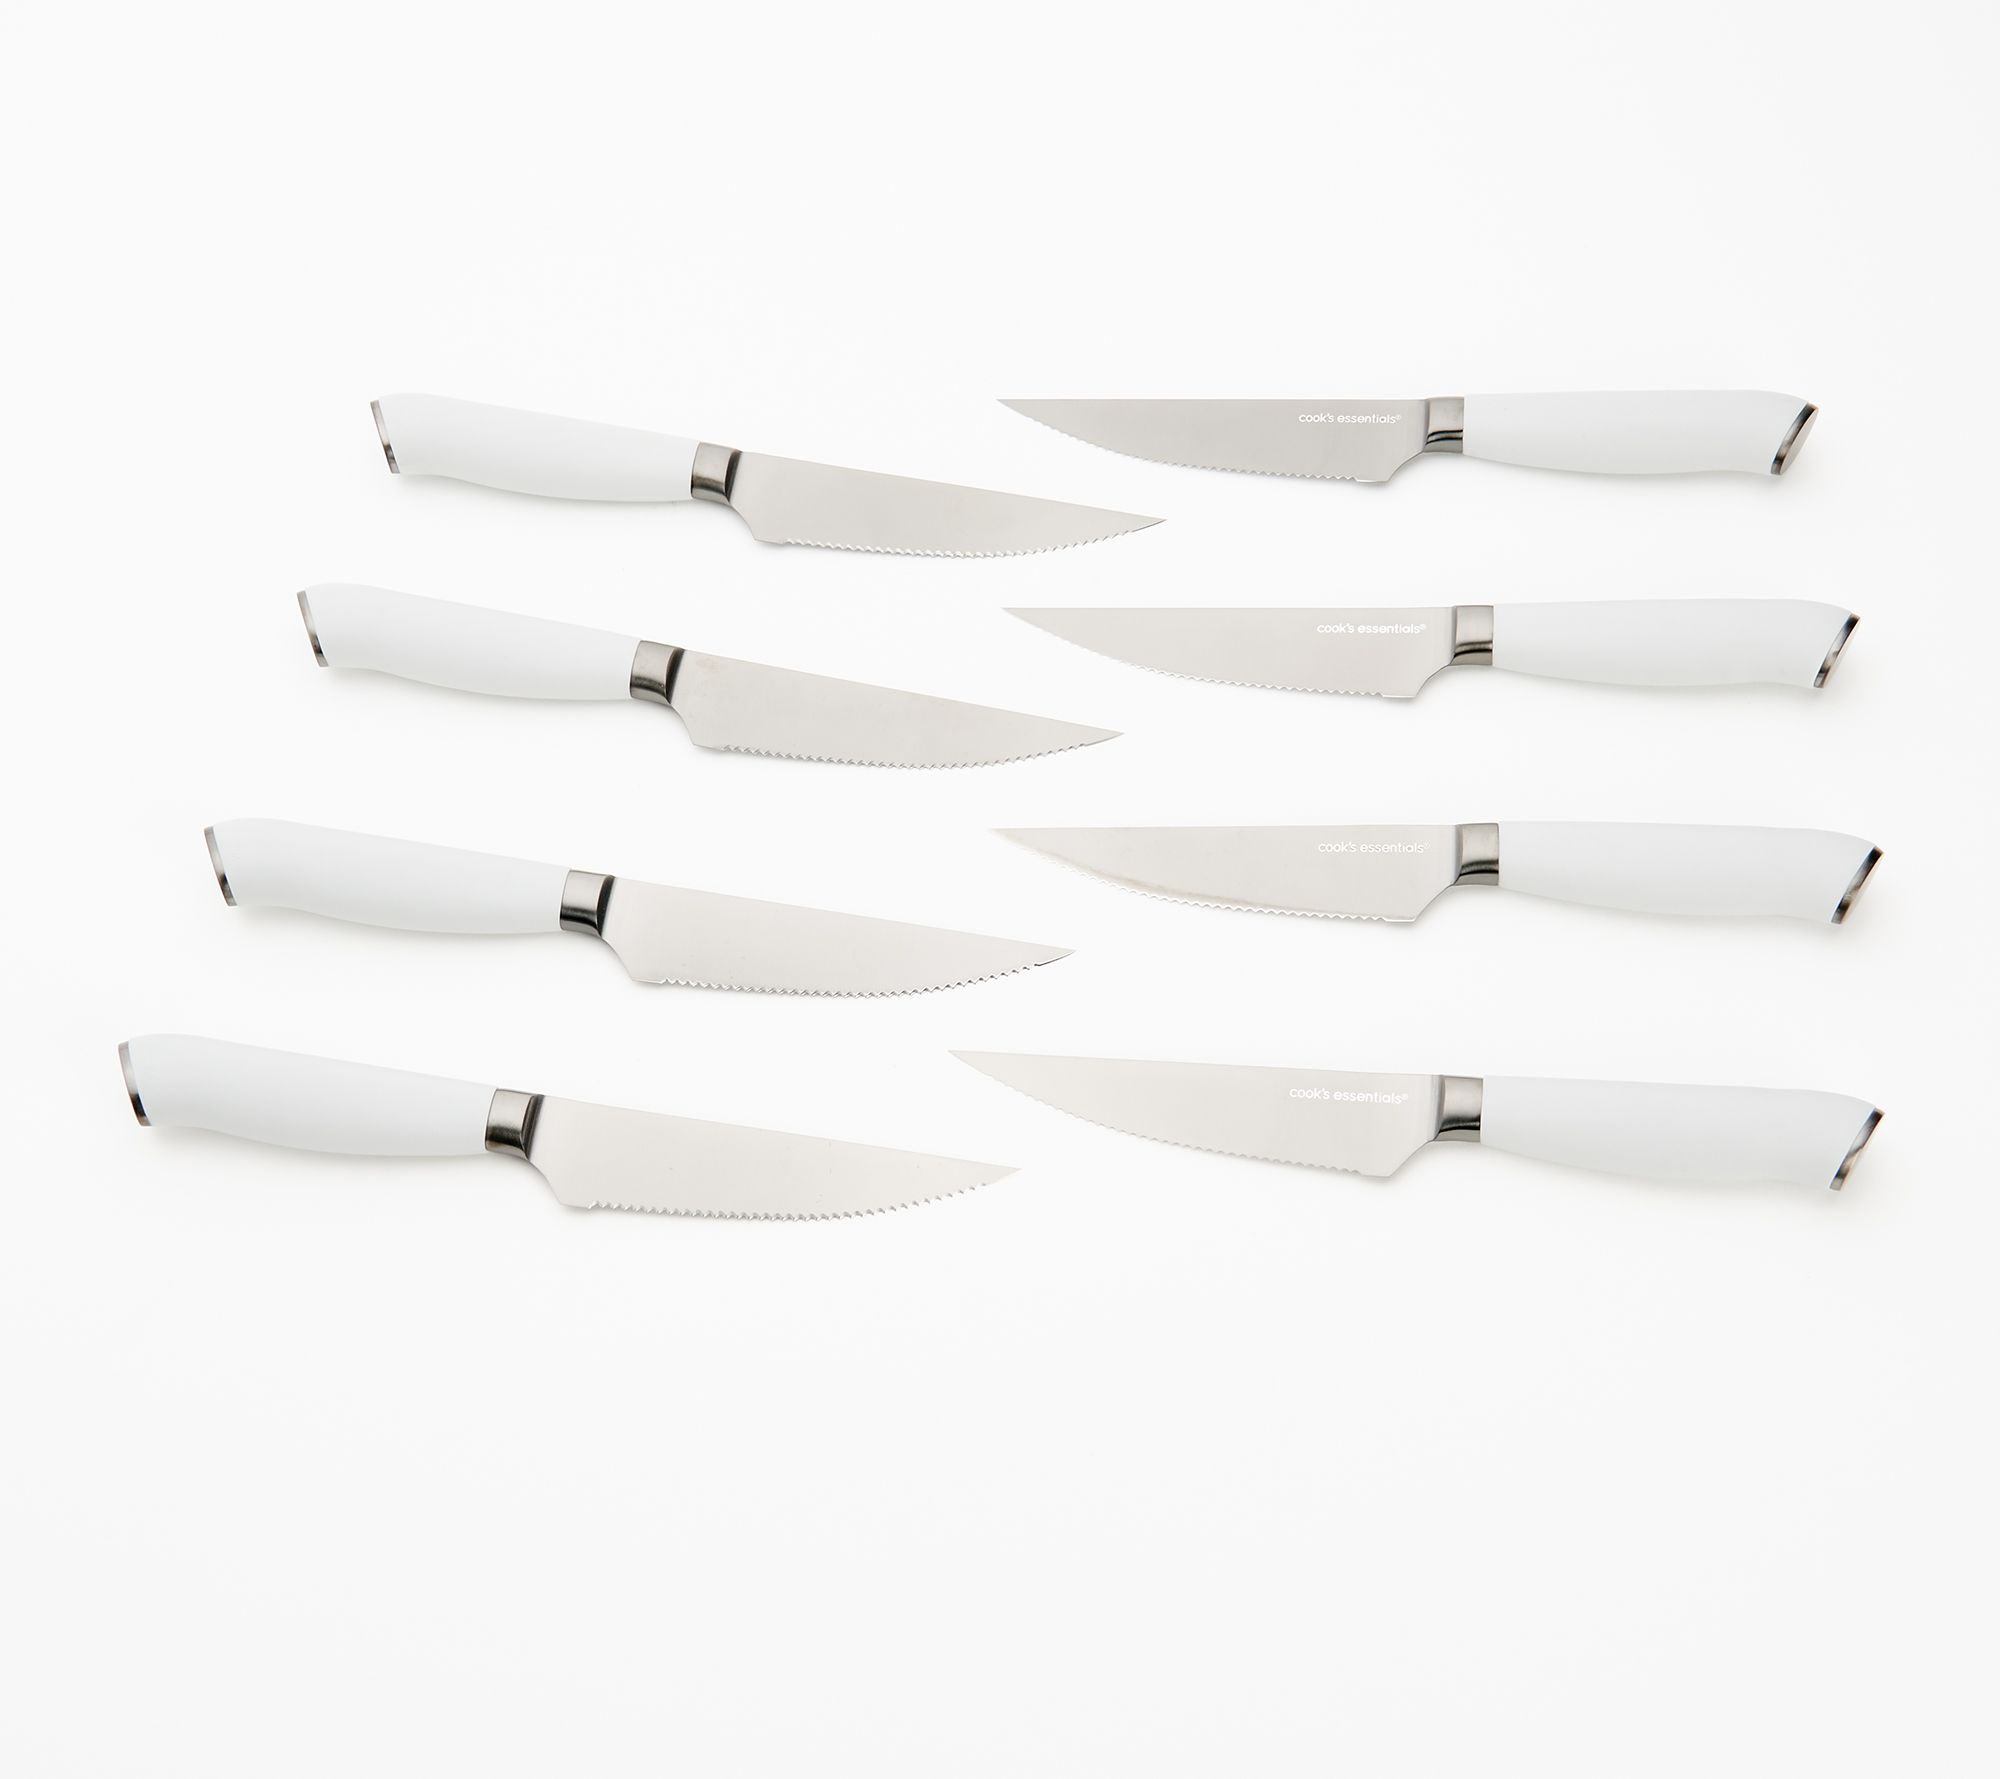 Cook's Essentials 8-Piece Japanese Steel Steak Knife Set 